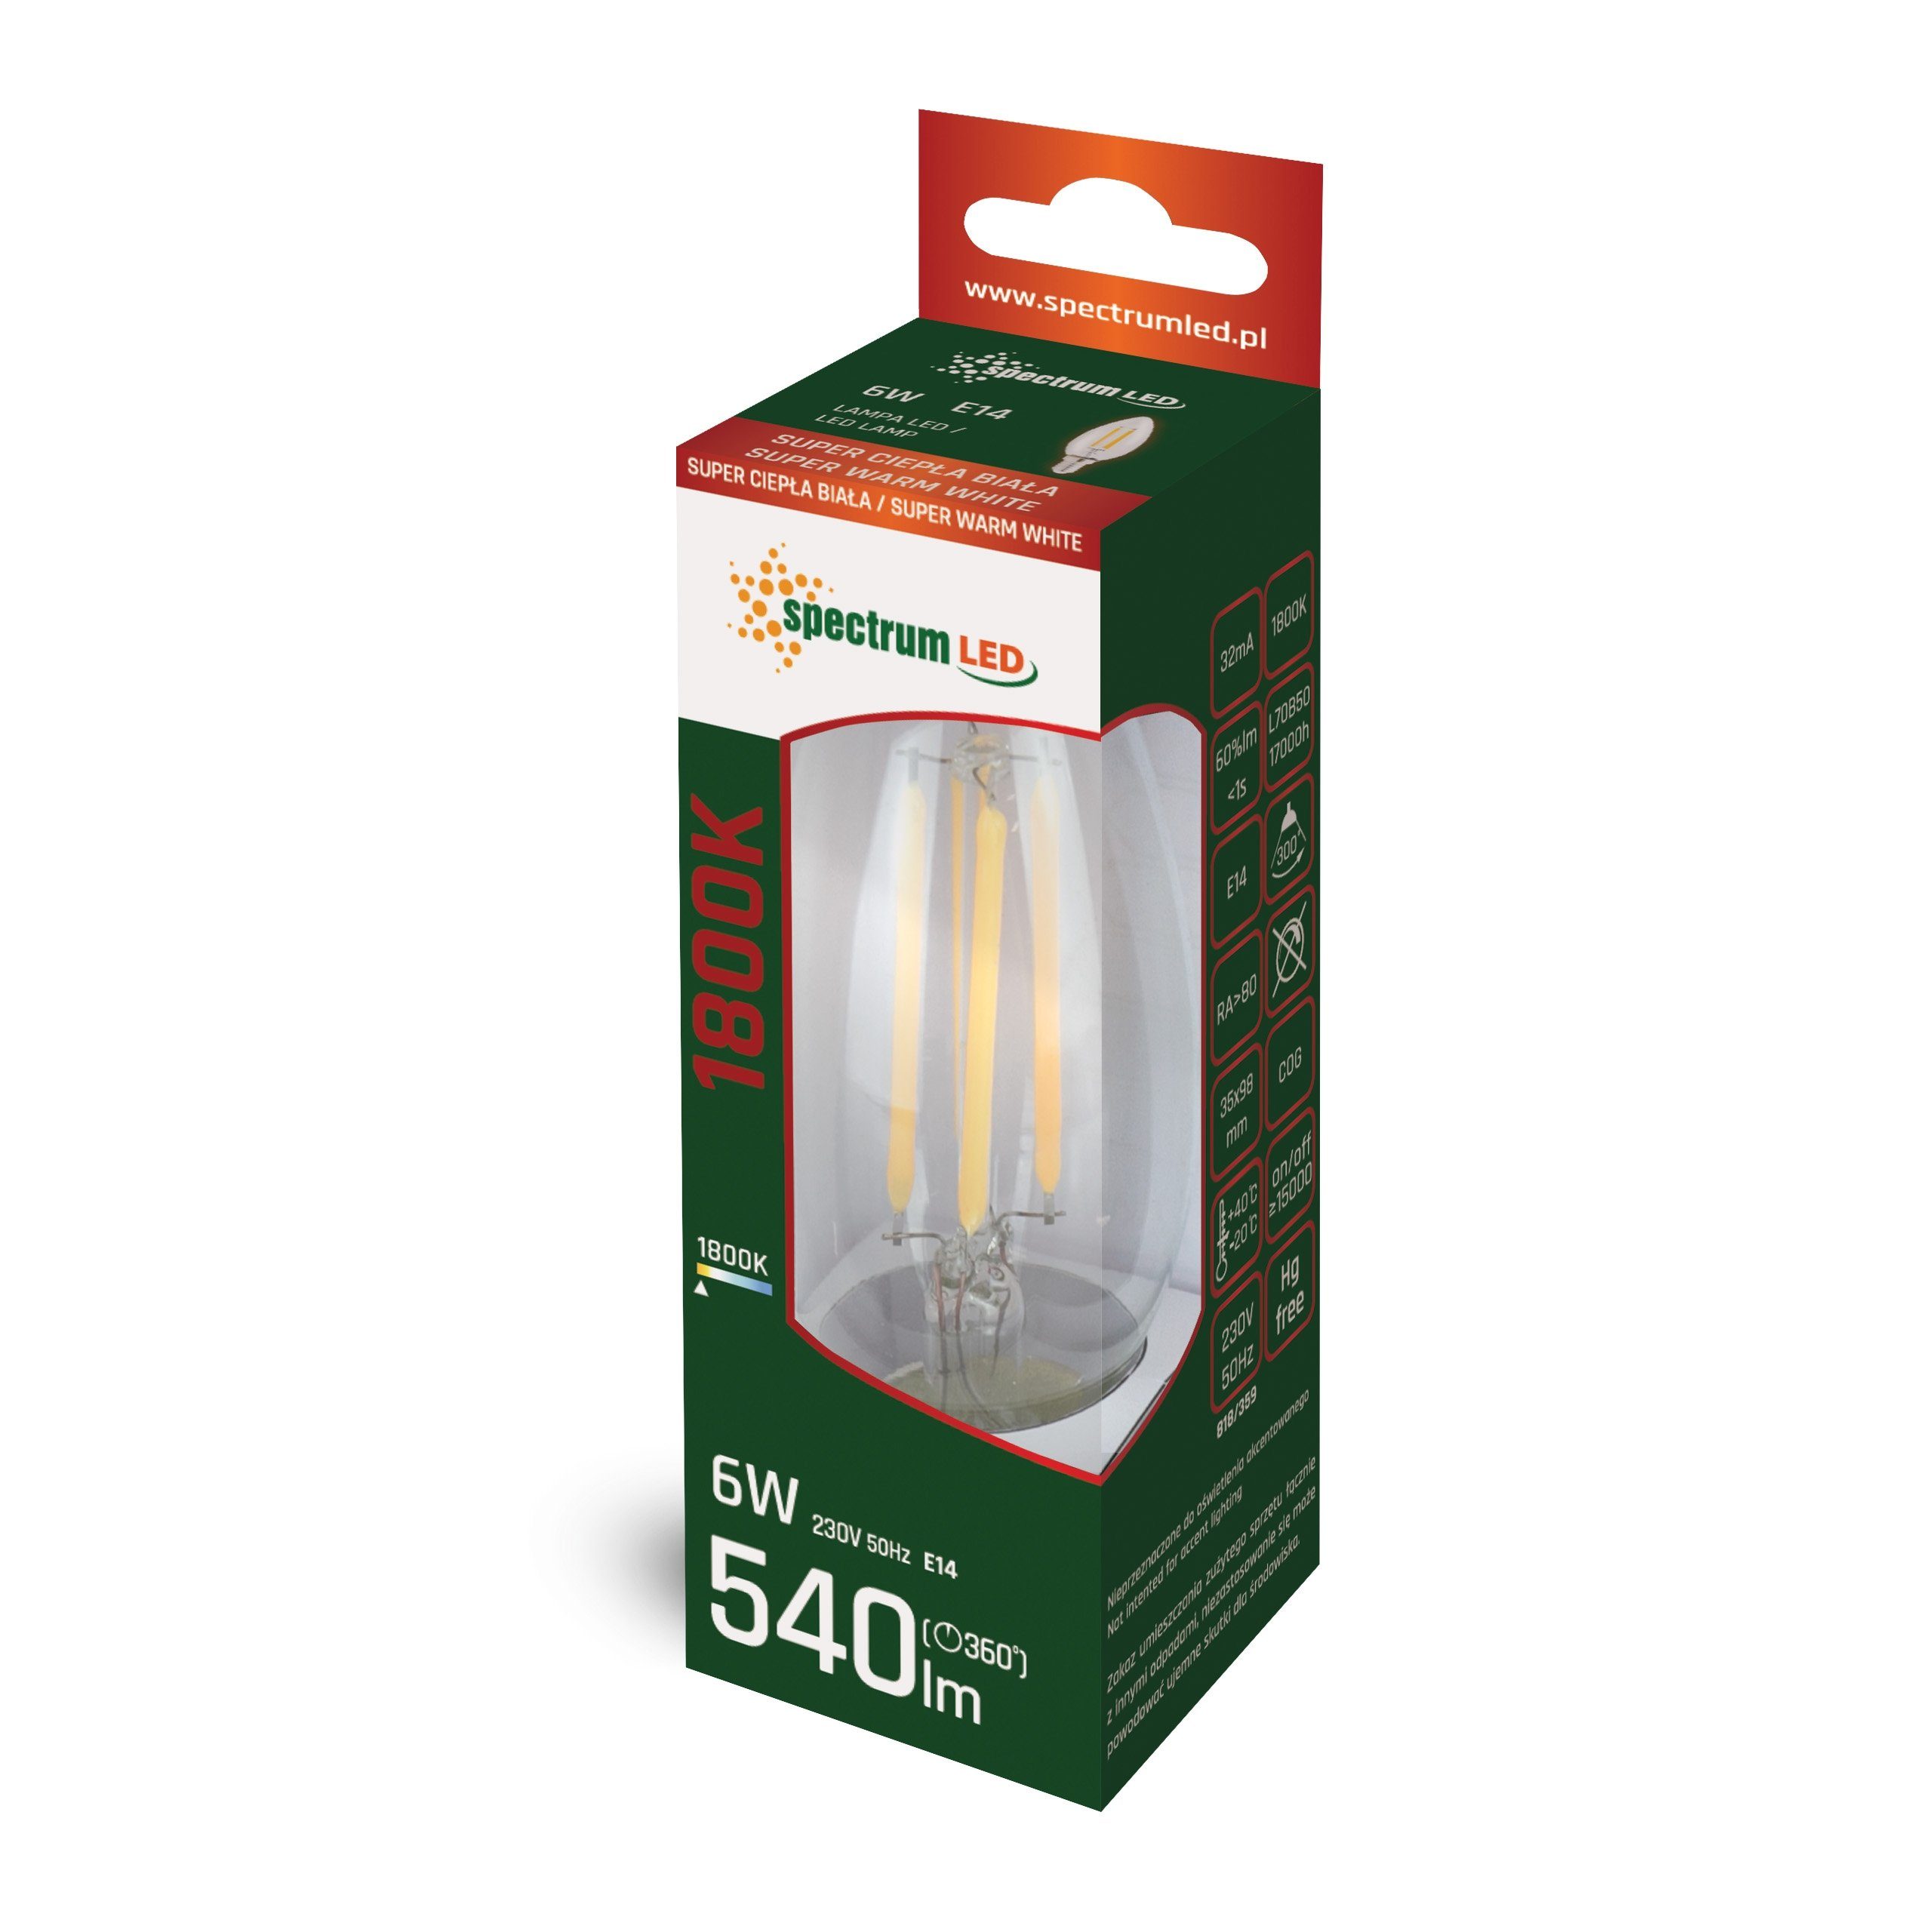 SpectrumLED LED-Leuchtmittel 1800K, 300° Extra-Warmweiß Extra klar 540lm C35 Kerze E14 6W LED Warmweiß Filament E14